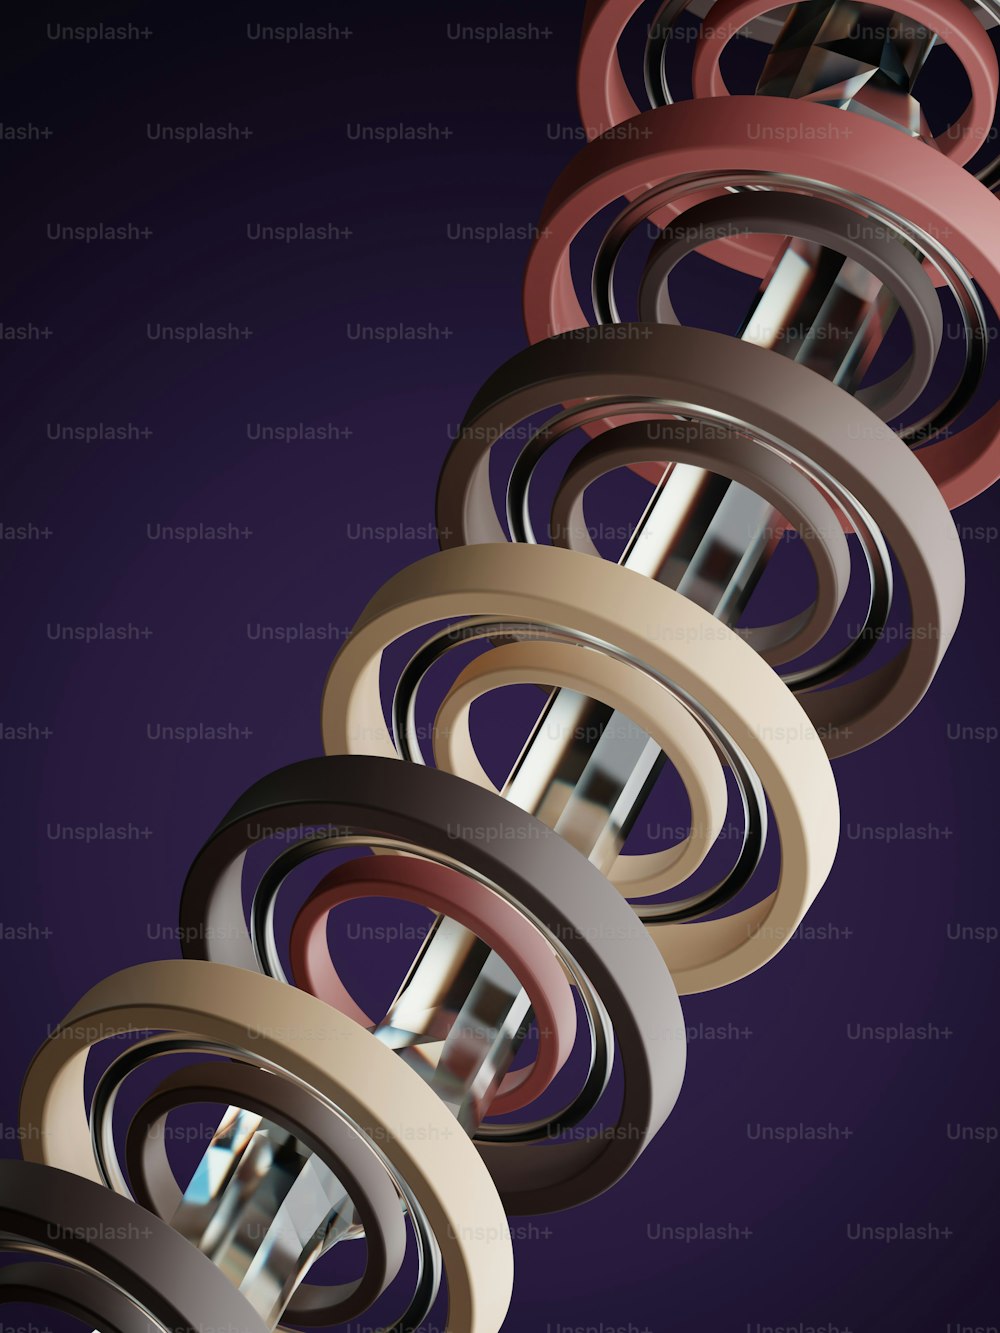 Un gruppo di anelli colorati diversi su uno sfondo viola